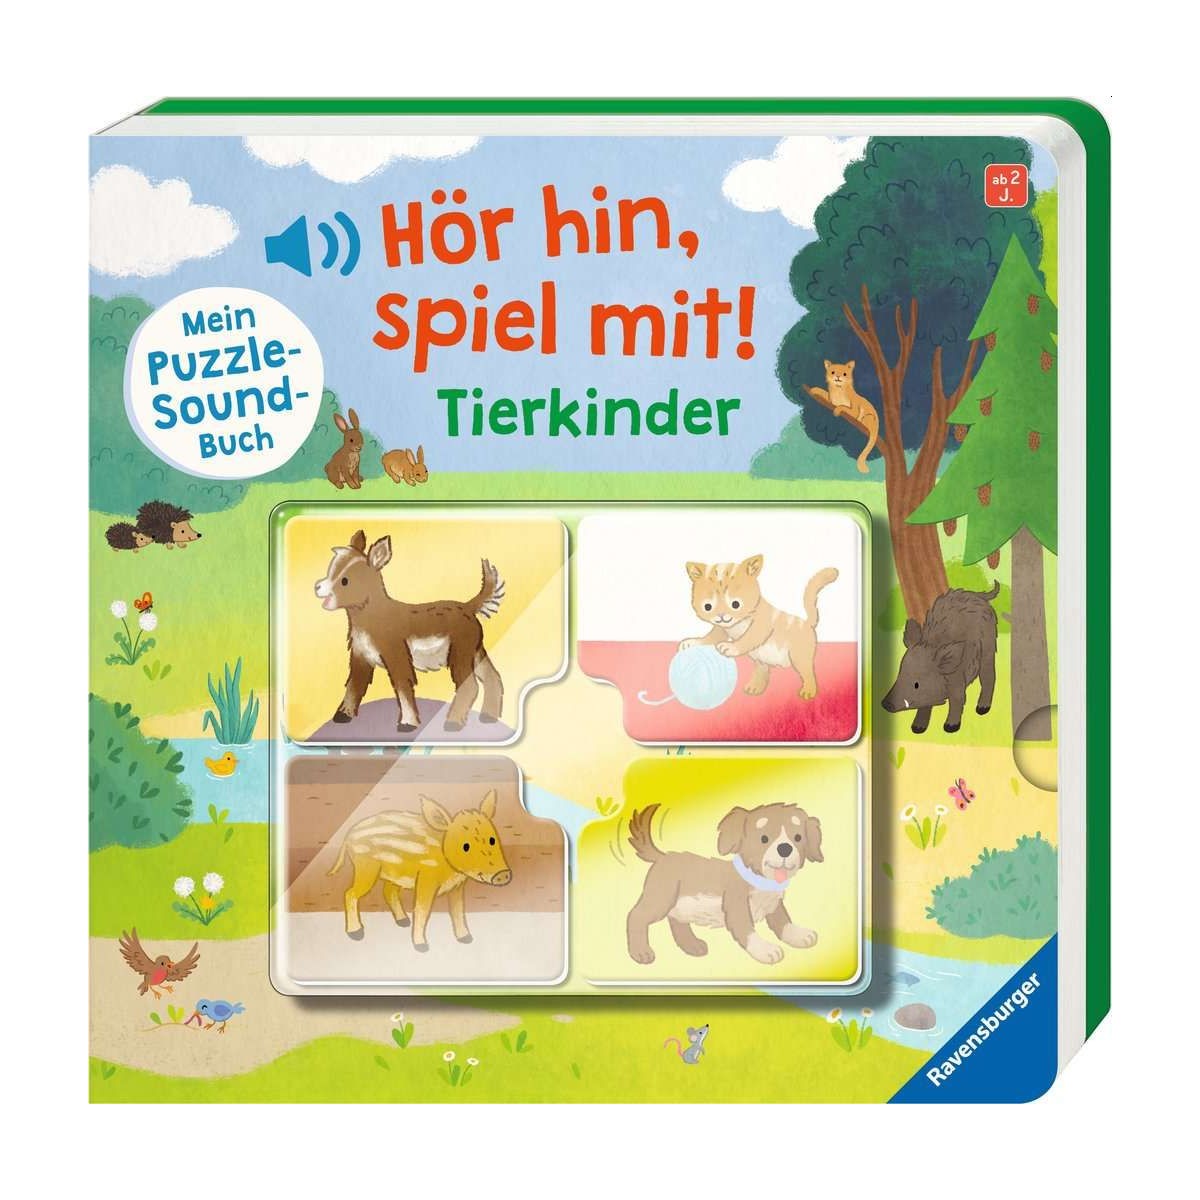 Ravensburger - Hör hin, spiel mit! Mein Puzzle-Soundbuch: Tierkinder